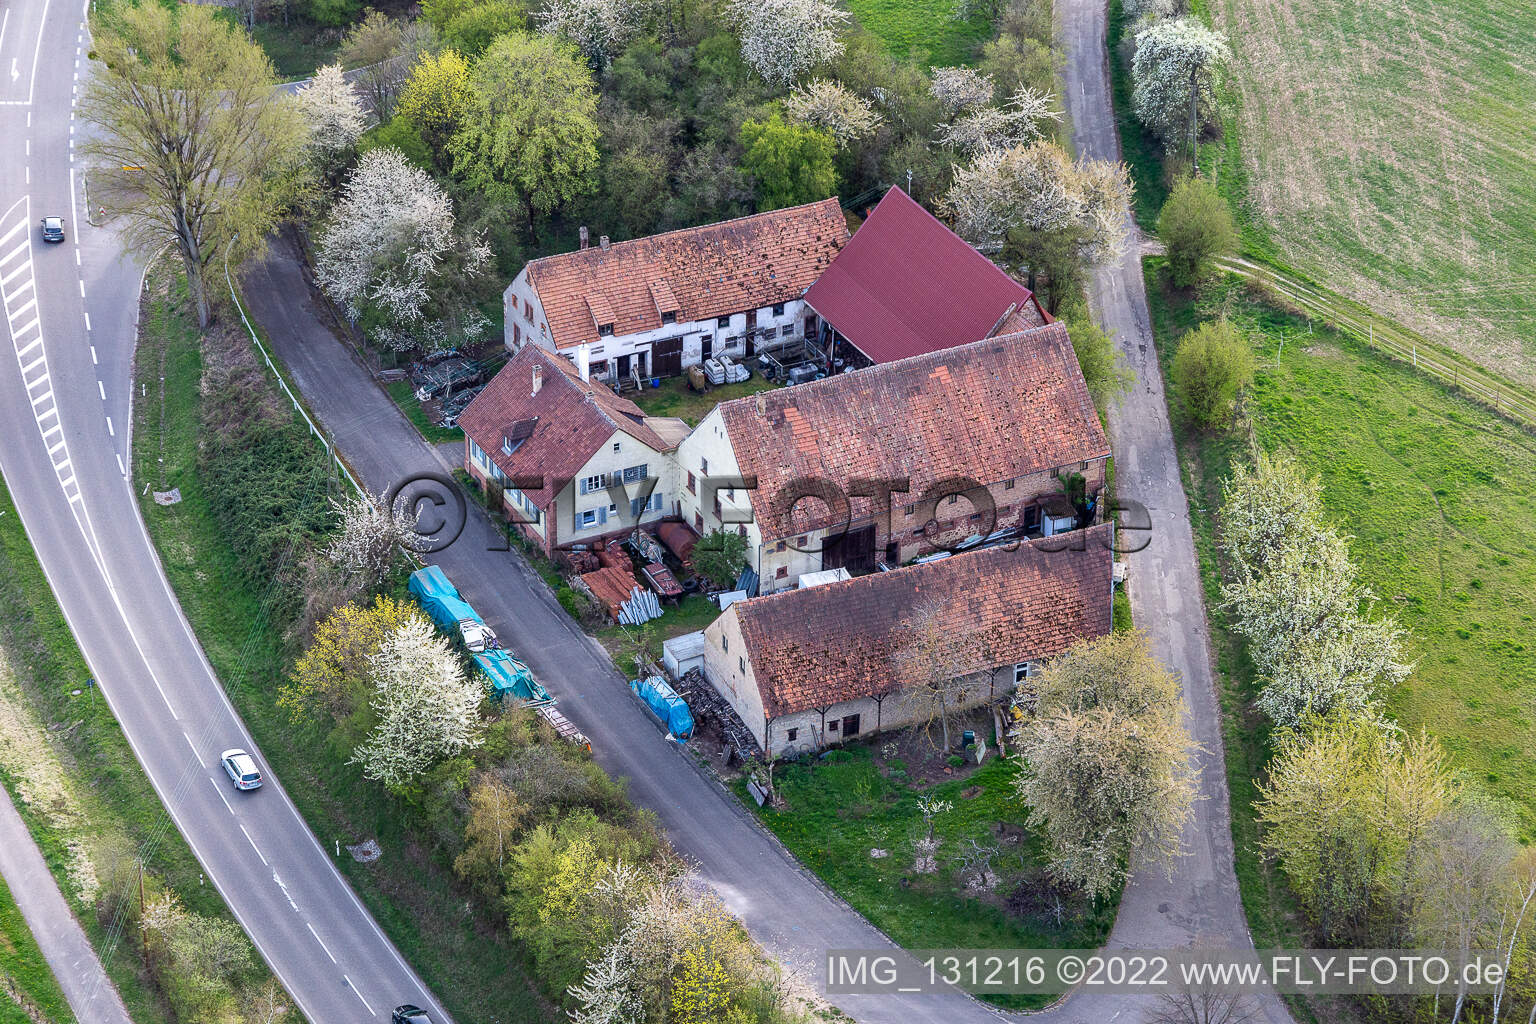 Dörrenbach im Bundesland Rheinland-Pfalz, Deutschland aus der Drohnenperspektive